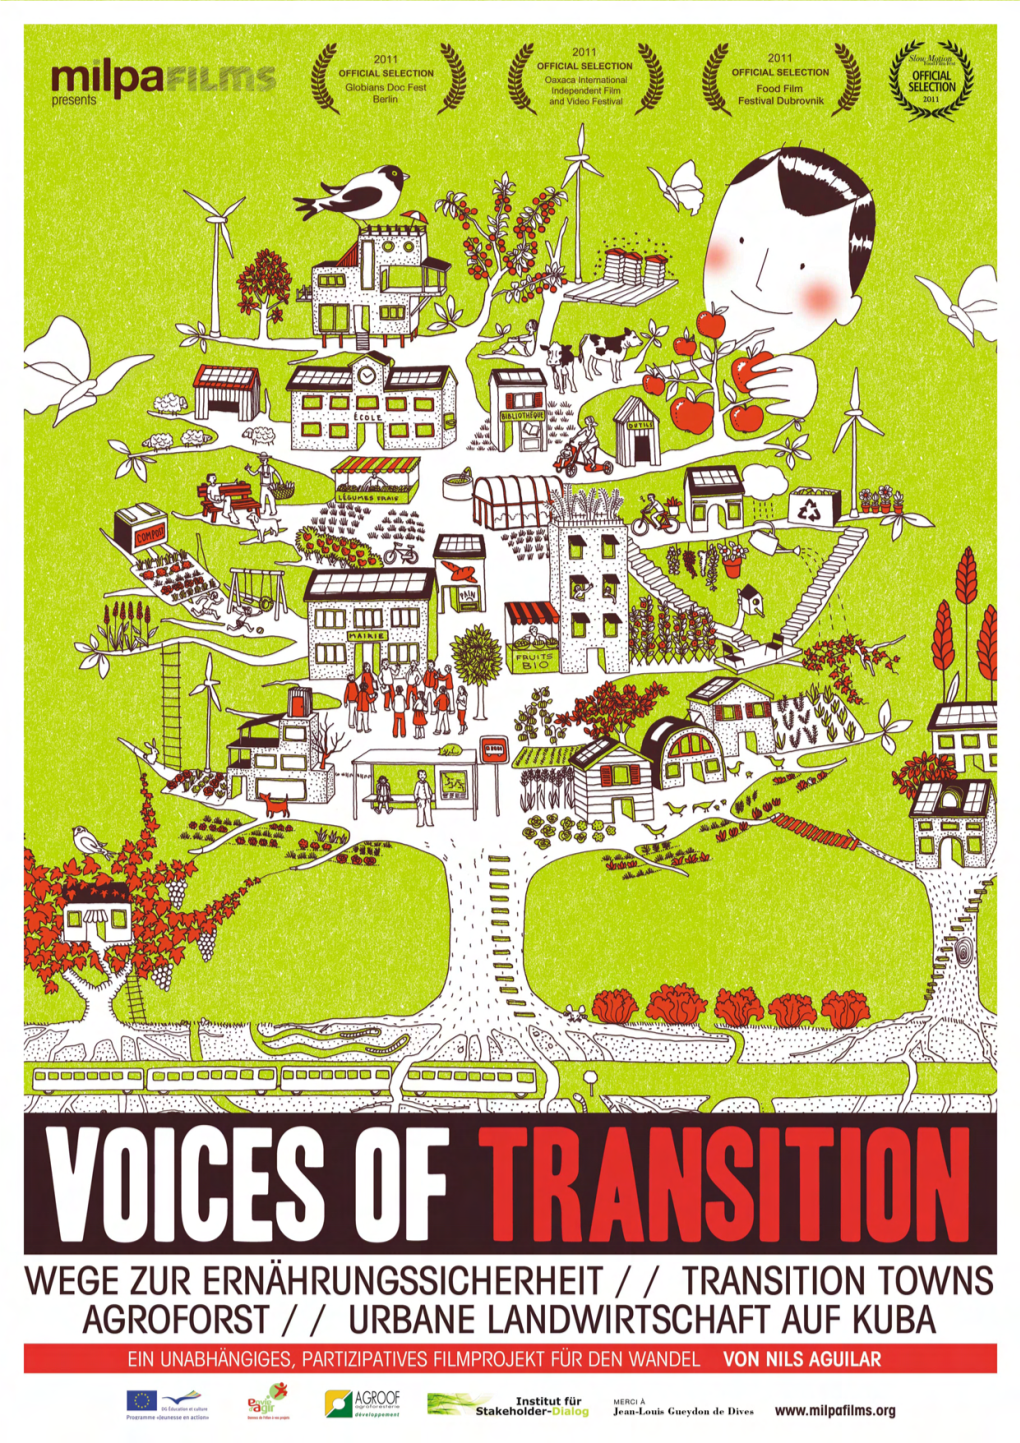 Voices of Transition – Ein Dokumtentarfilm Über Lösungen! Voices of Transition – Ein Dokumtentarfilm Über Lösungen!